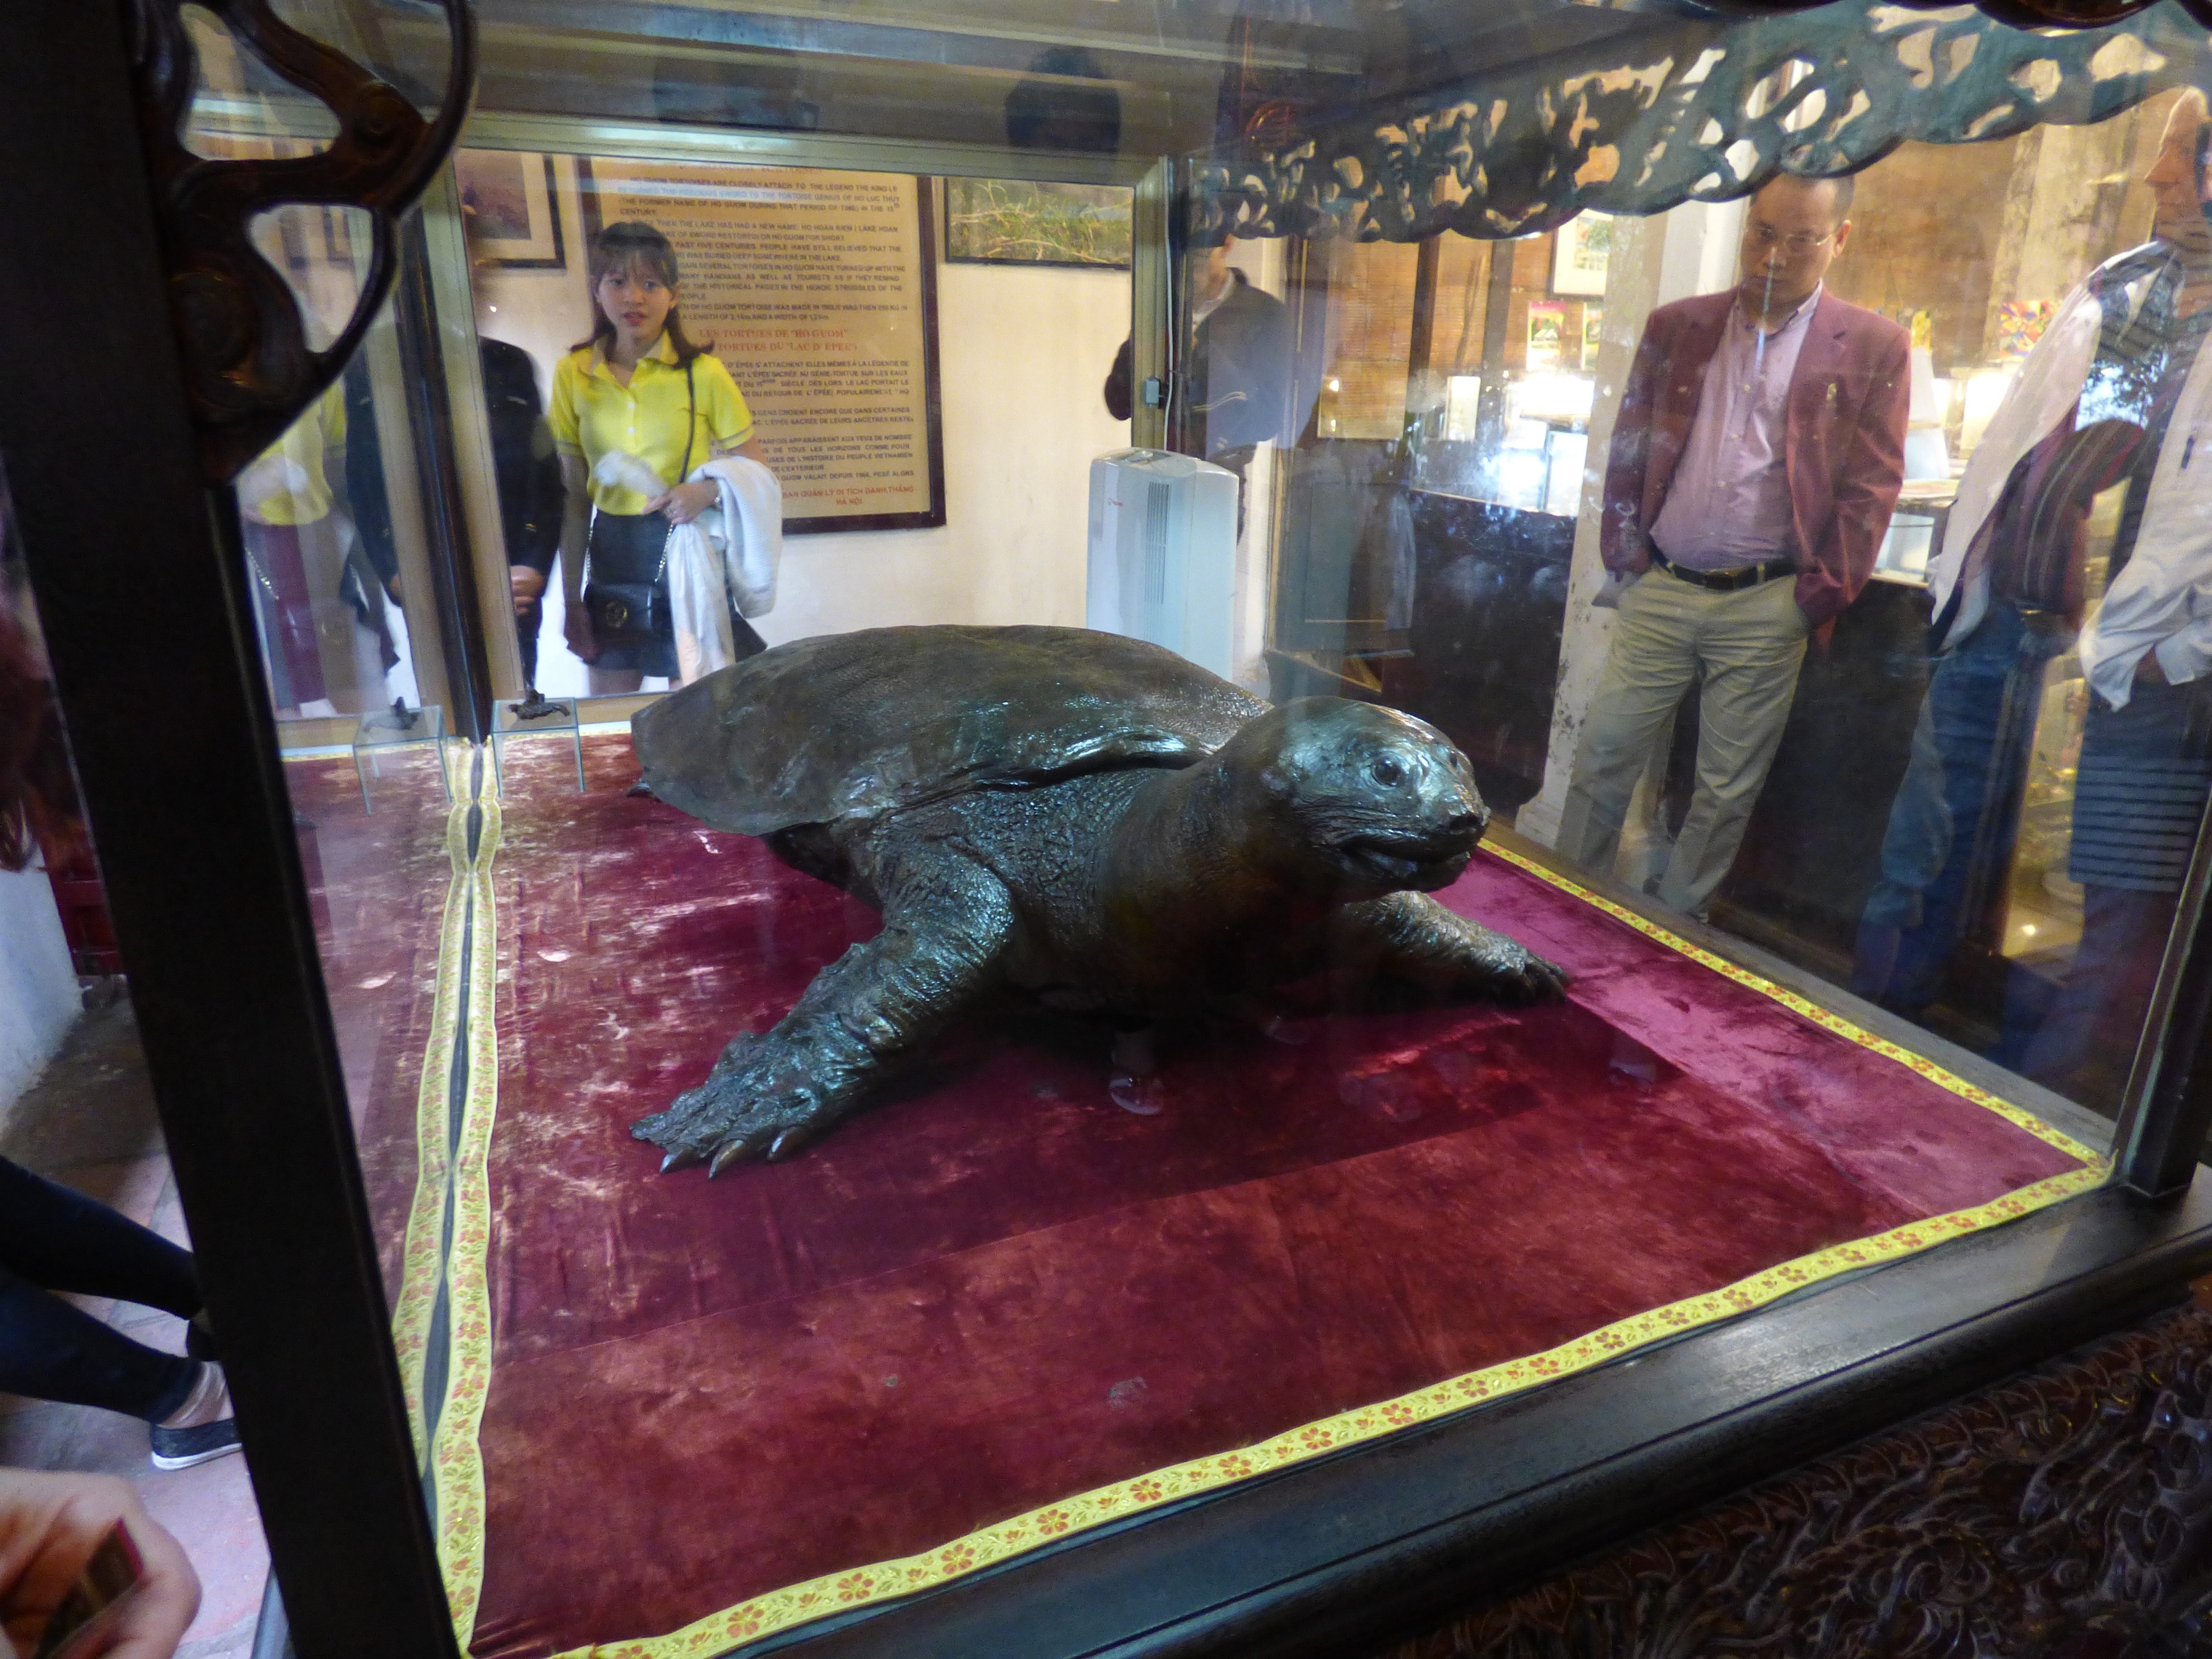  A tóban állítólag még ma is élnek óriásteknősök. Egy 1968-ban elhullott s kitömött példányát tekinthetjük meg a tárolóban. A teknős életében 250 kilogramm és 2,1 méter volt. 